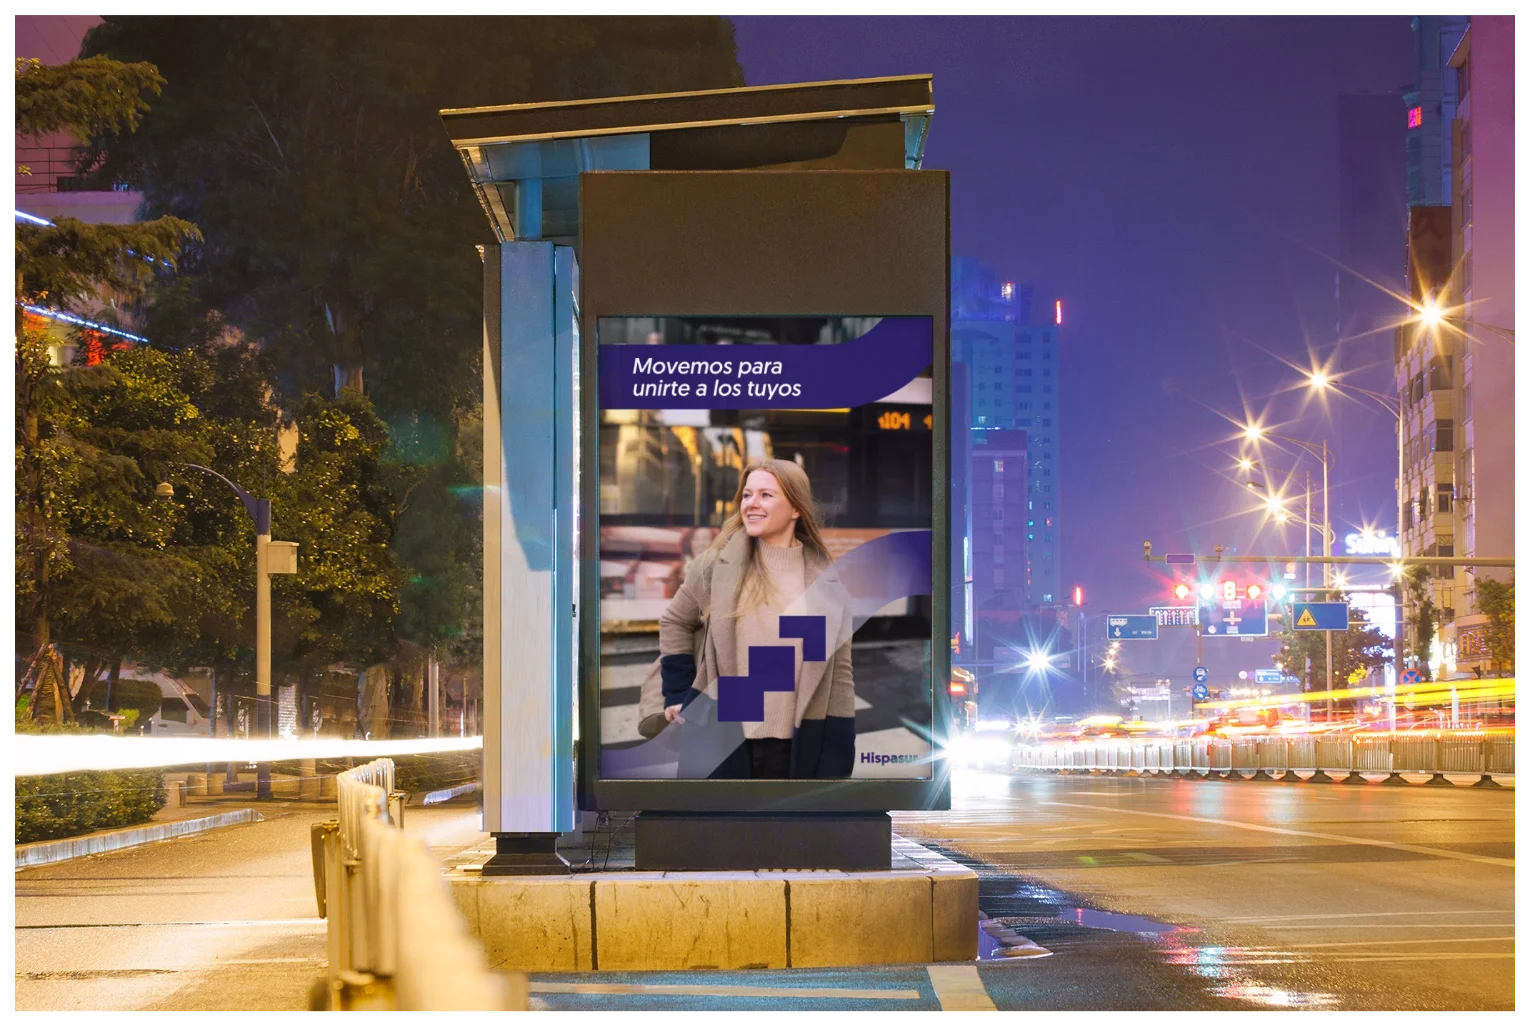 diseño de banner o cartel publicitario en parada de autobus